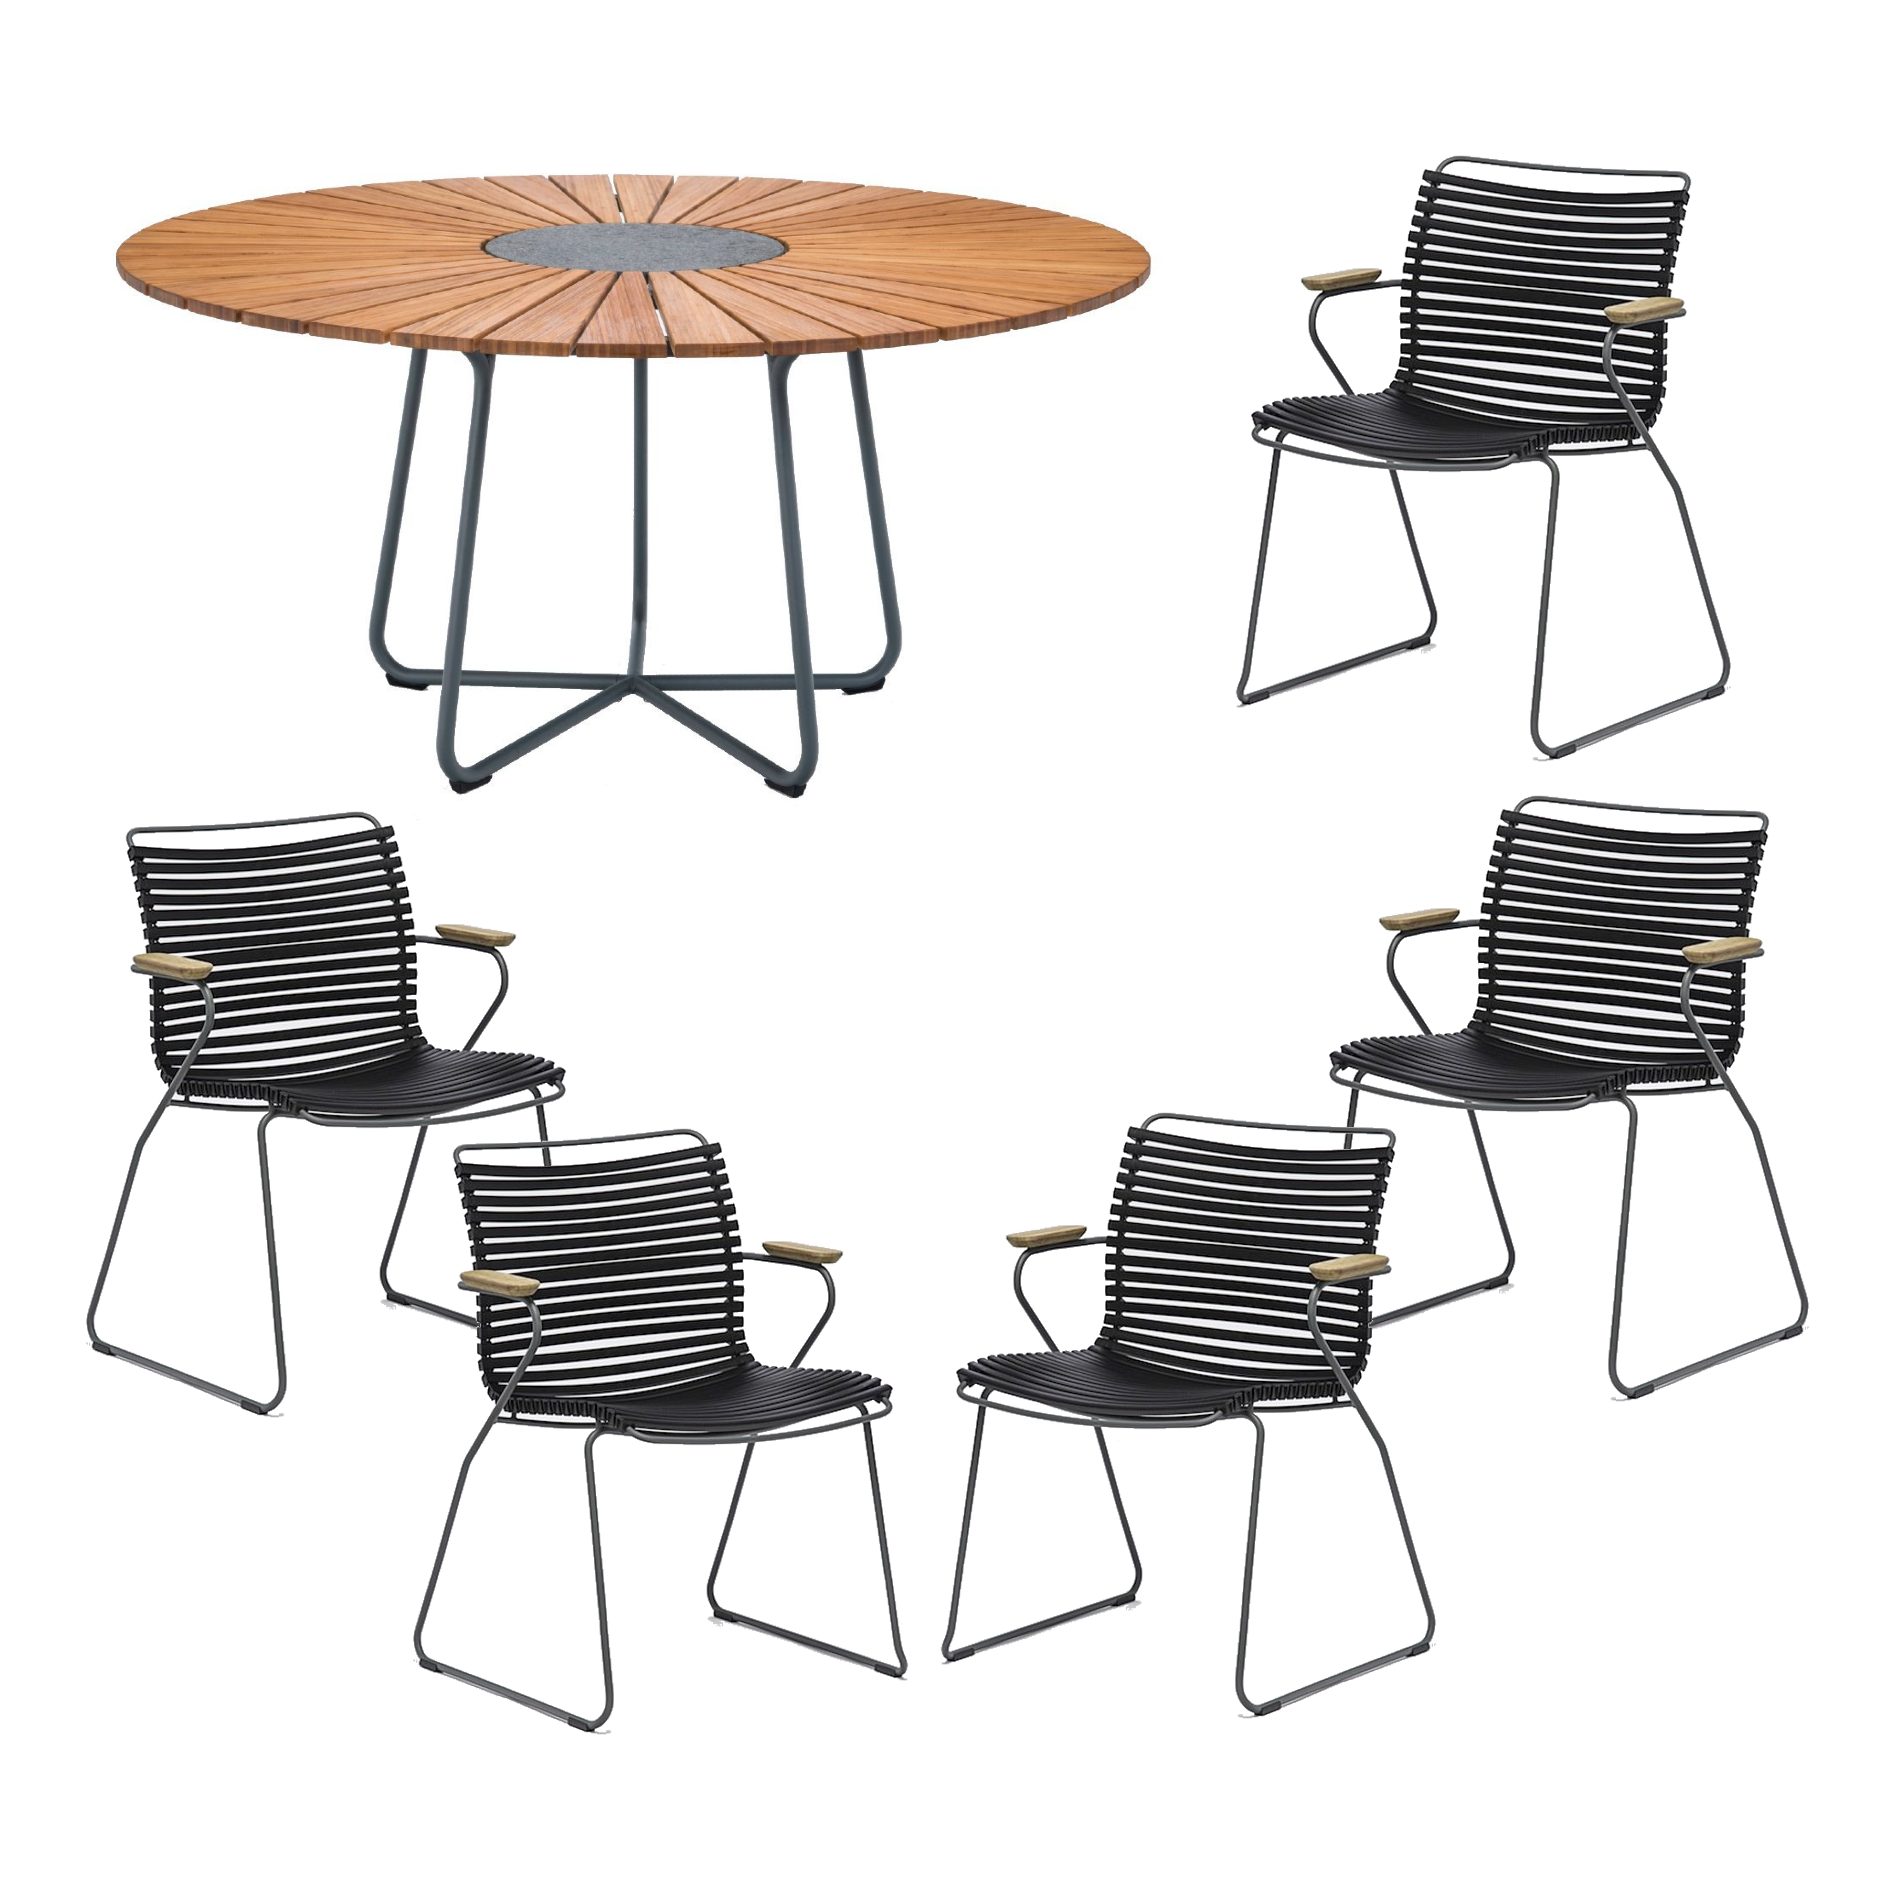 Houe Gartenmöbel-Set mit Tisch "Circle" Ø 150 cm und 5x Stapelsessel "Click", Lamellen schwarz, Tischplatte Bambus